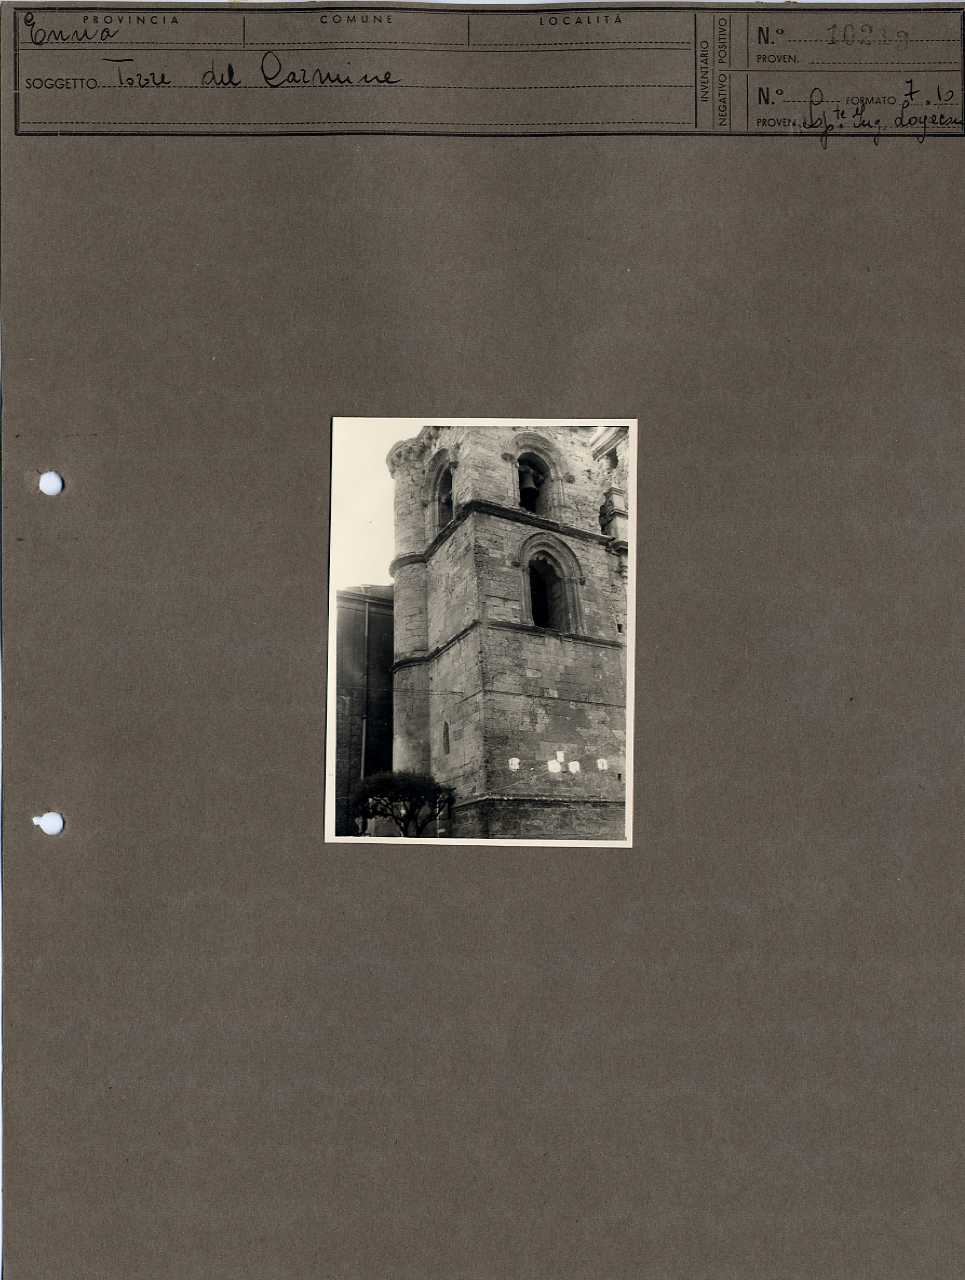 Sicilia - Enna - Architettura religiosa - Chiesa del Carmine - campanile (positivo, elemento-parte componente, scheda di supporto) di Anonimo <1951 - 2000> (terzo quarto XX)